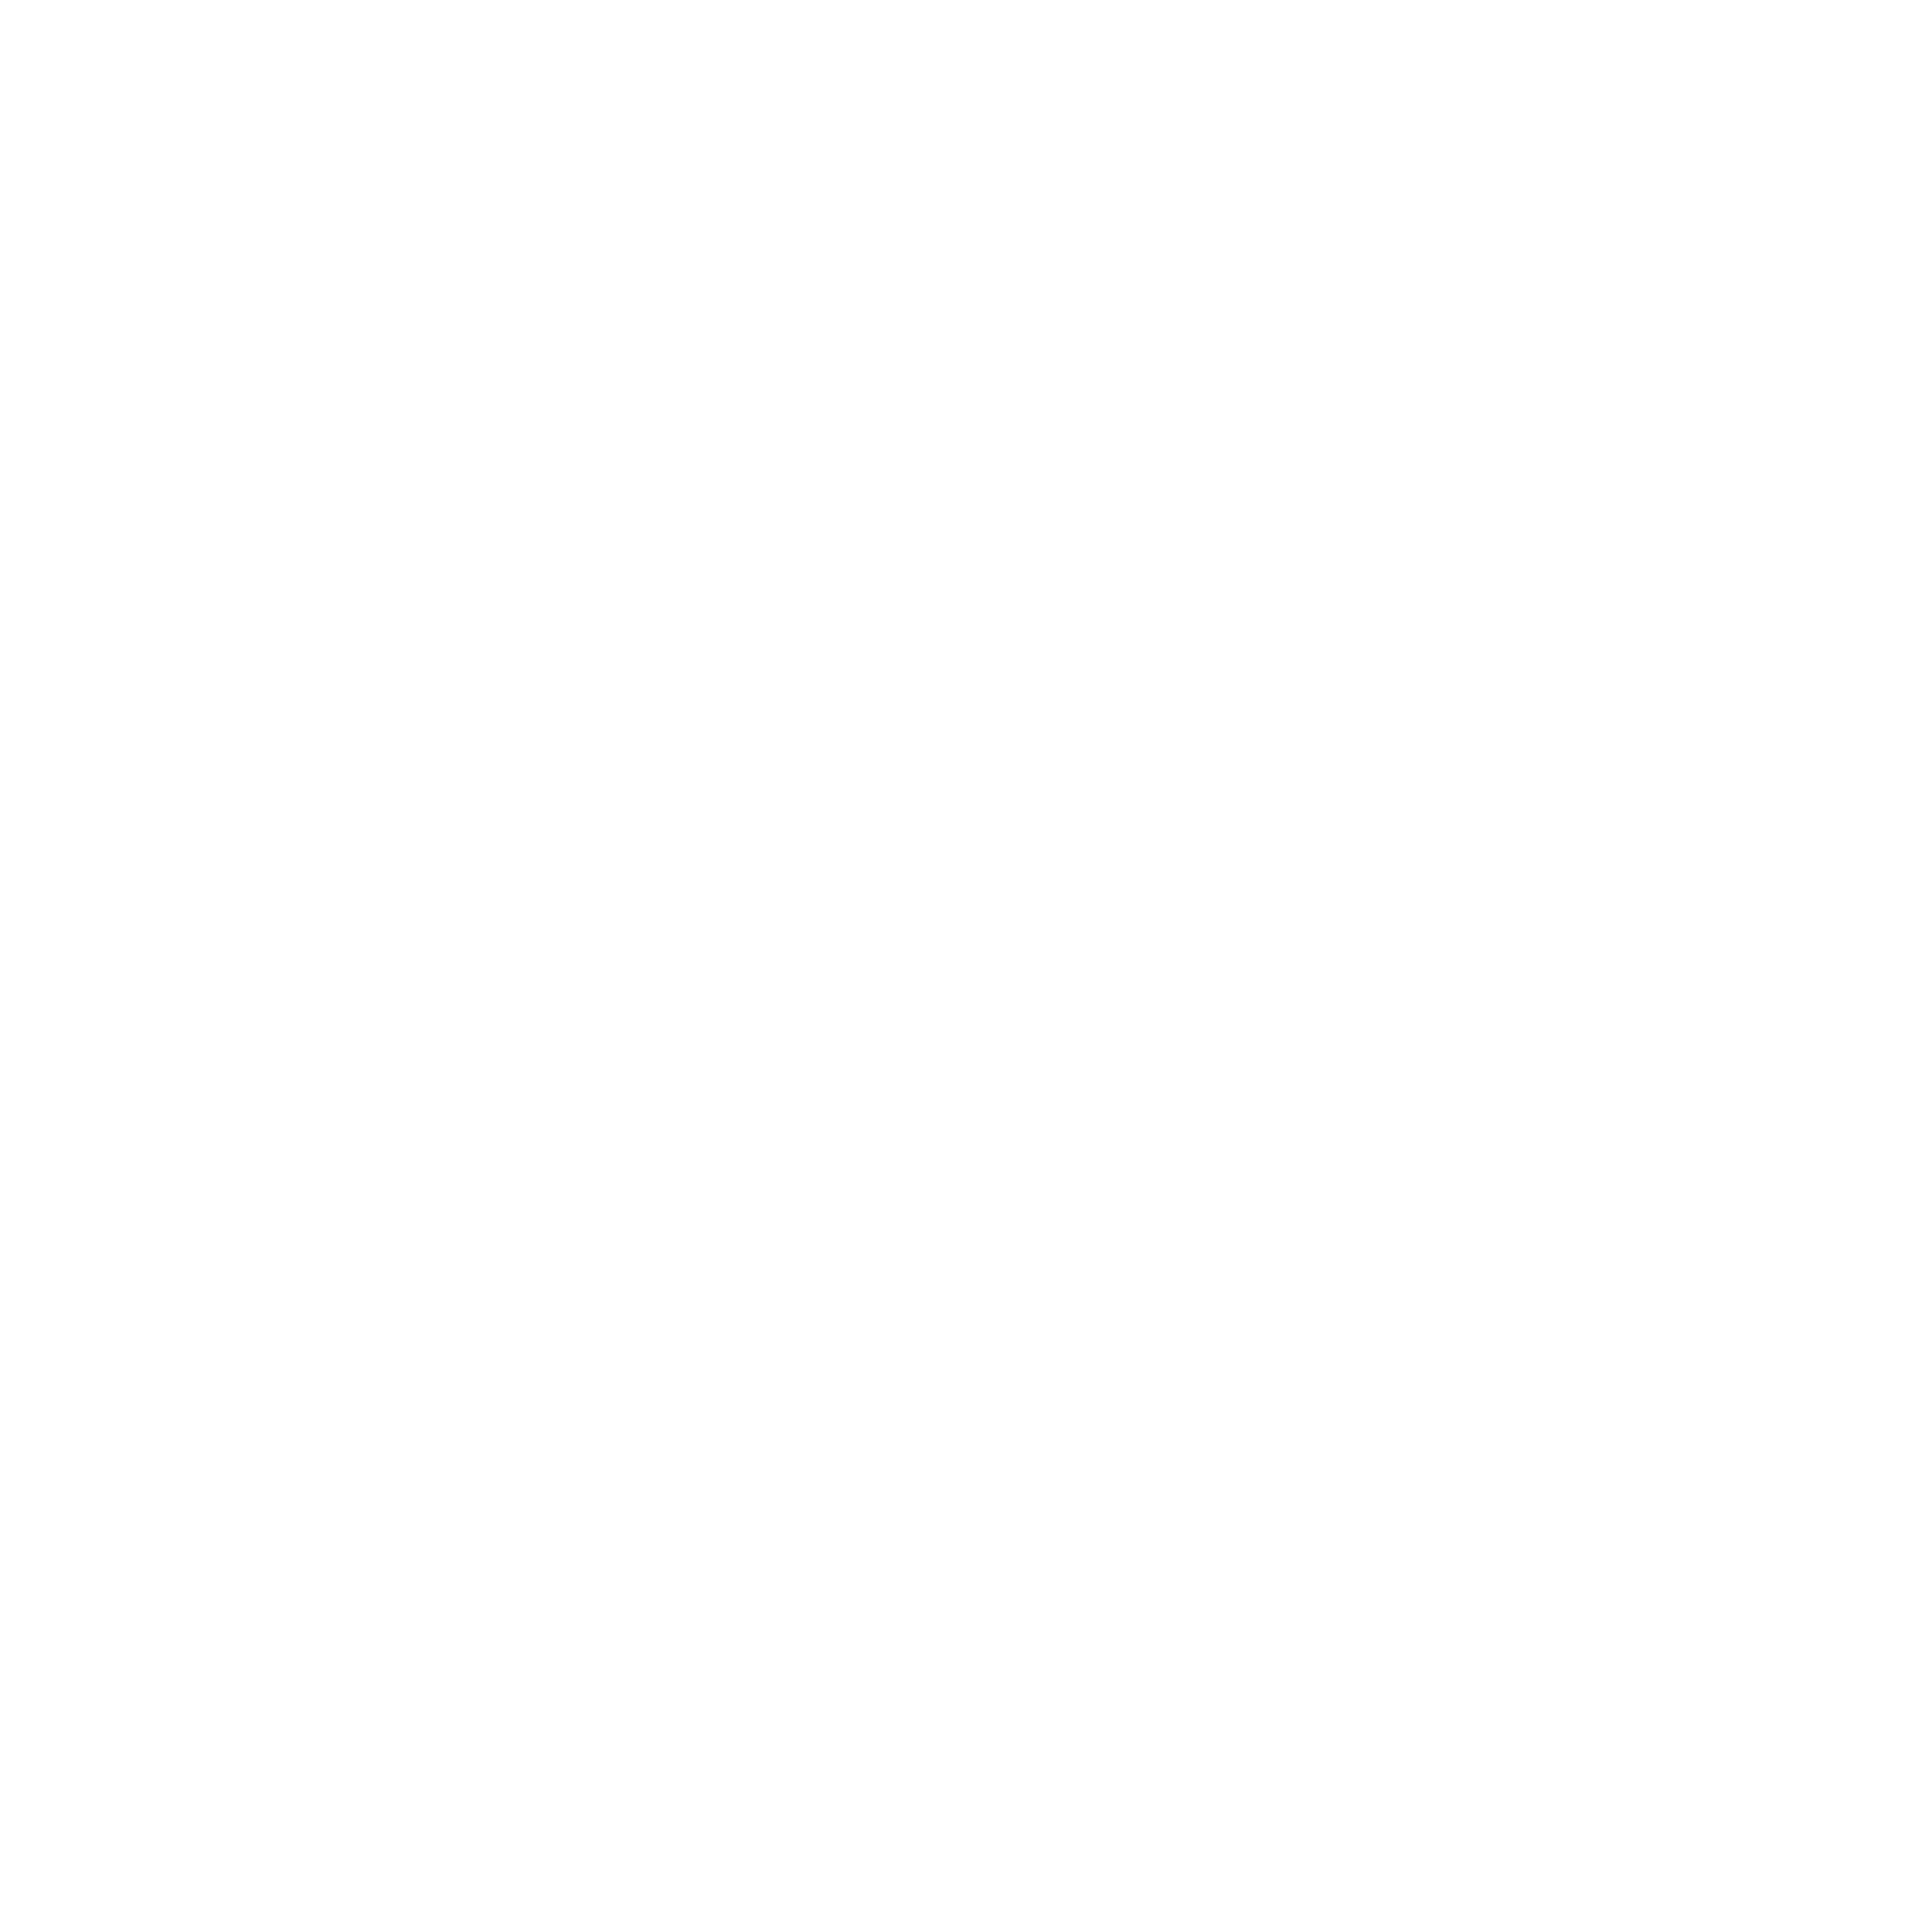 Bar Bulnes